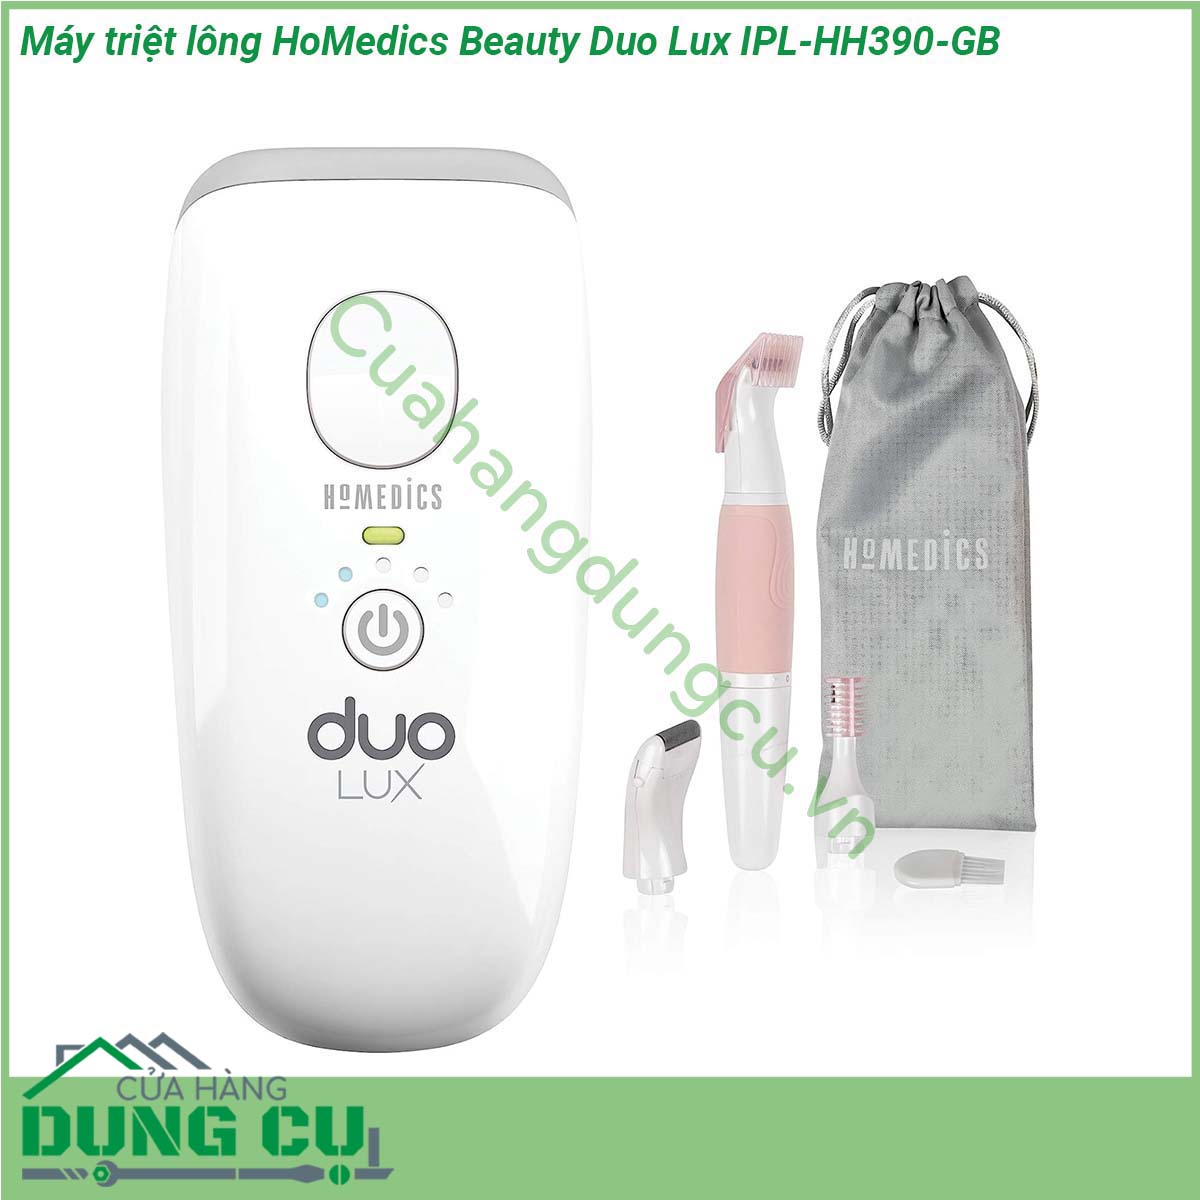 Máy triệt lông HoMedics Beauty Duo Lux IPL-HH390-GB là một thiết bị triệt lông nhỏ gon thiết kế thời trang Máy triệt lông dễ dàng sử dụng tại nhà Với công nghệ huỳnh quang tiên tiến (AFT) Freeglide và Intense Pulse Light (IPL) cung cấp các phương pháp điều trị linh hoạt đem lại hiệu quả cao nhất trong các công nghệ triệt lông